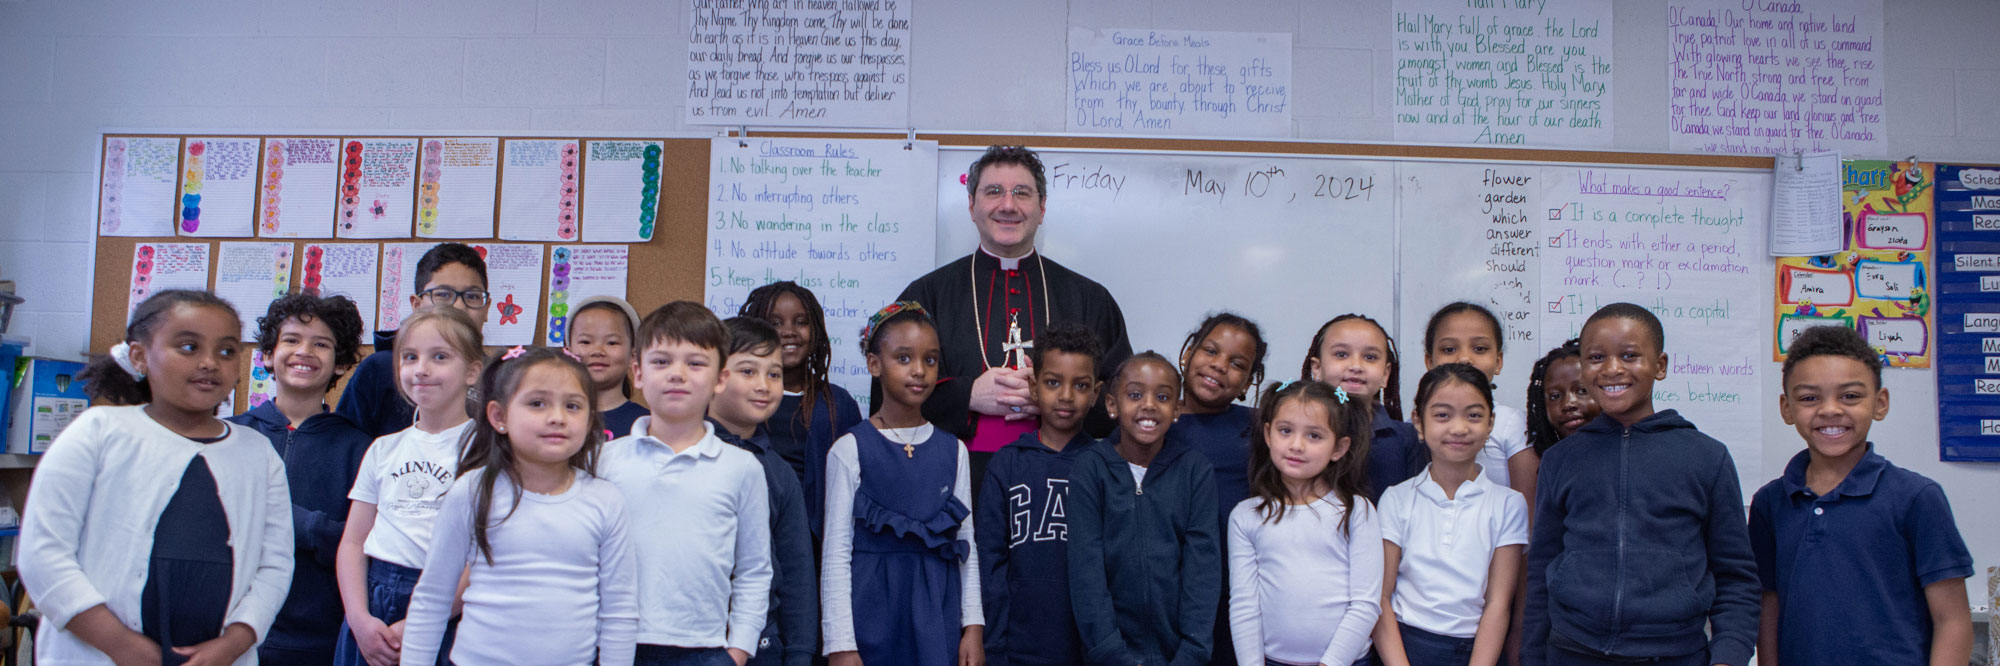 Catholic Education Week News Story Banner